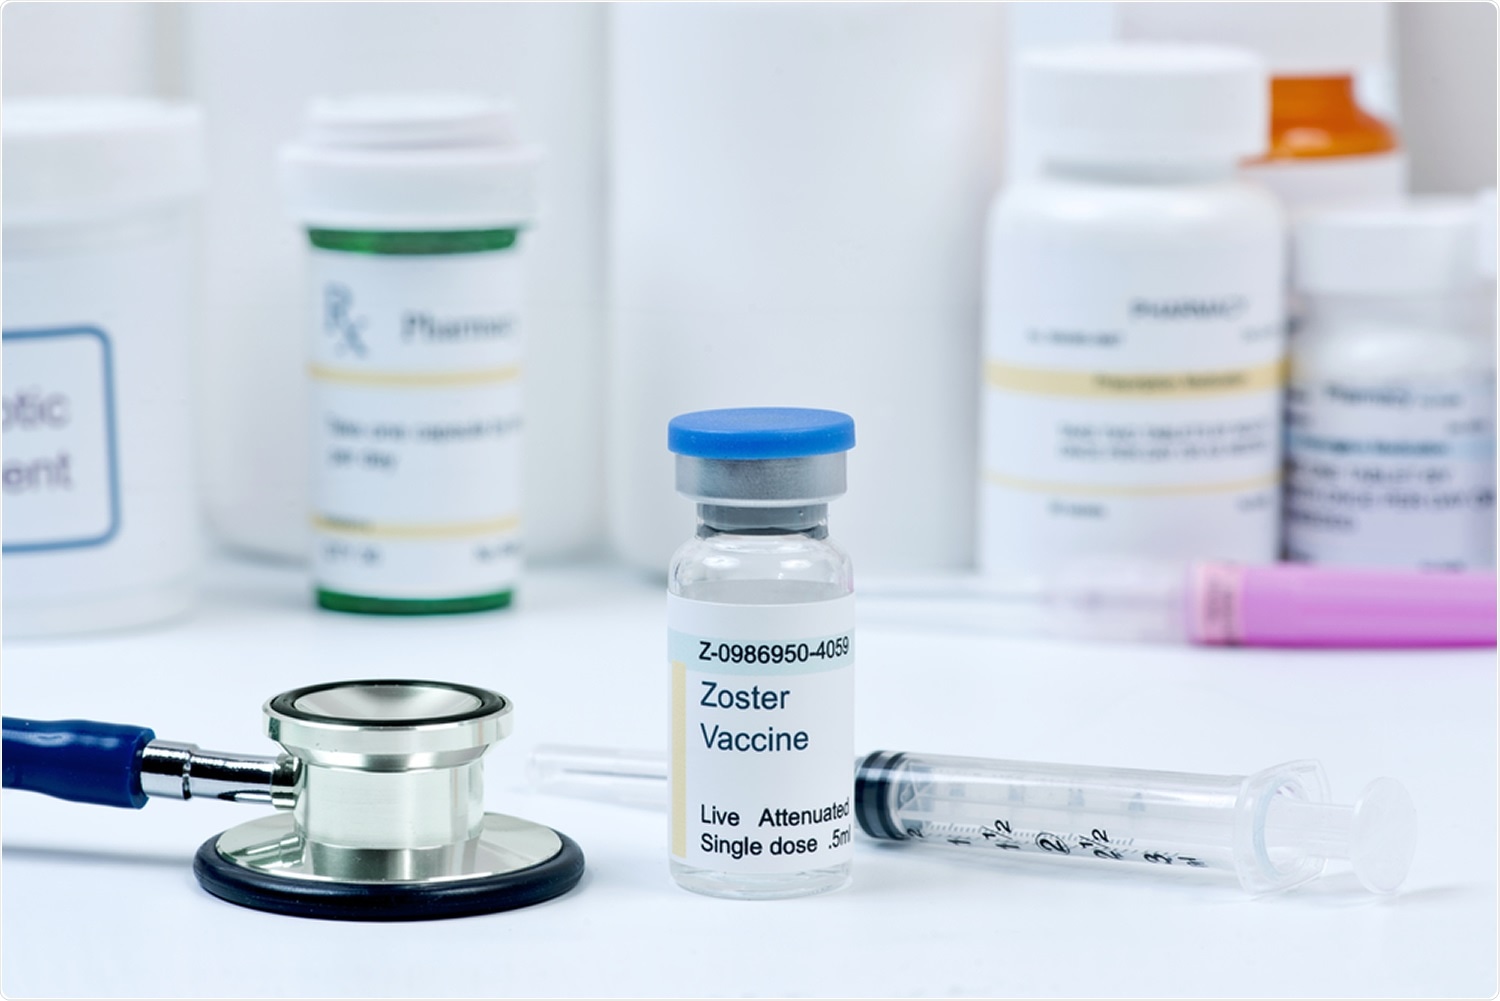 Estudio: Vacuna adjuvanted recombinante del zoster y riesgo reducido de la diagnosis COVID-19 y de hospitalización en más viejos adultos. Haber de imagen: MedstockPhotos/Shutterstock